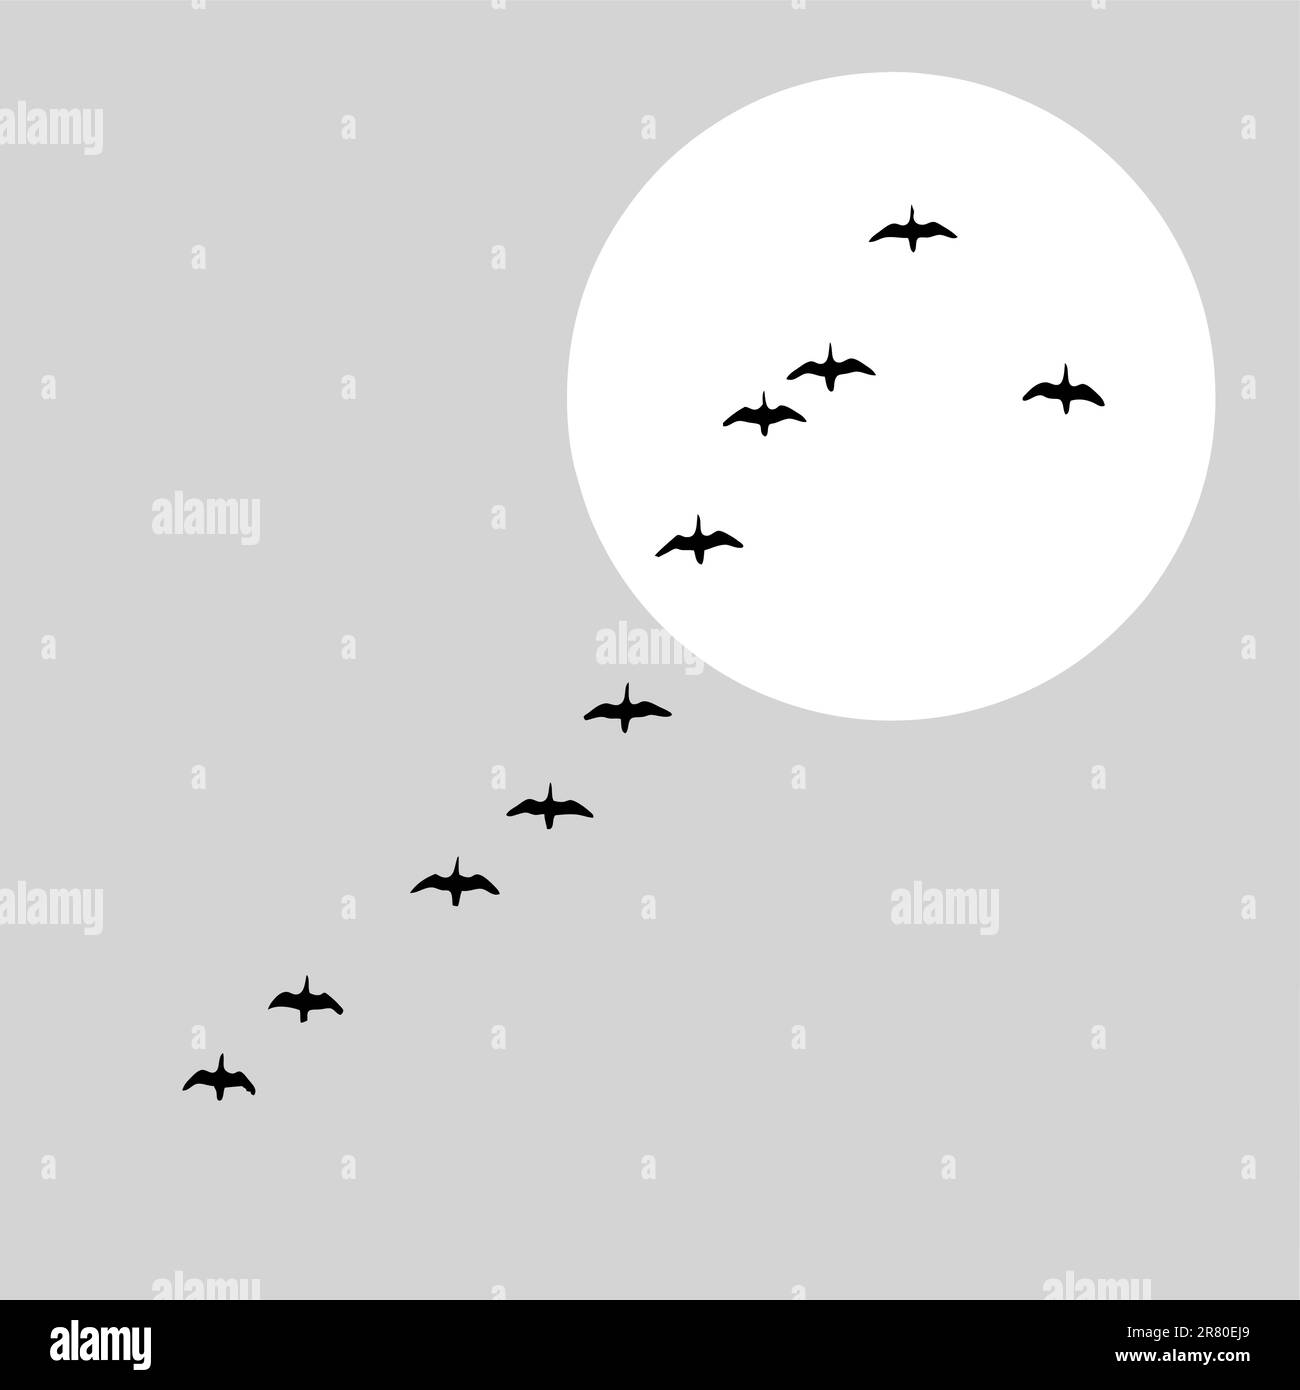 flying ducks silhouette on solar background, vector illustration Stock Vector